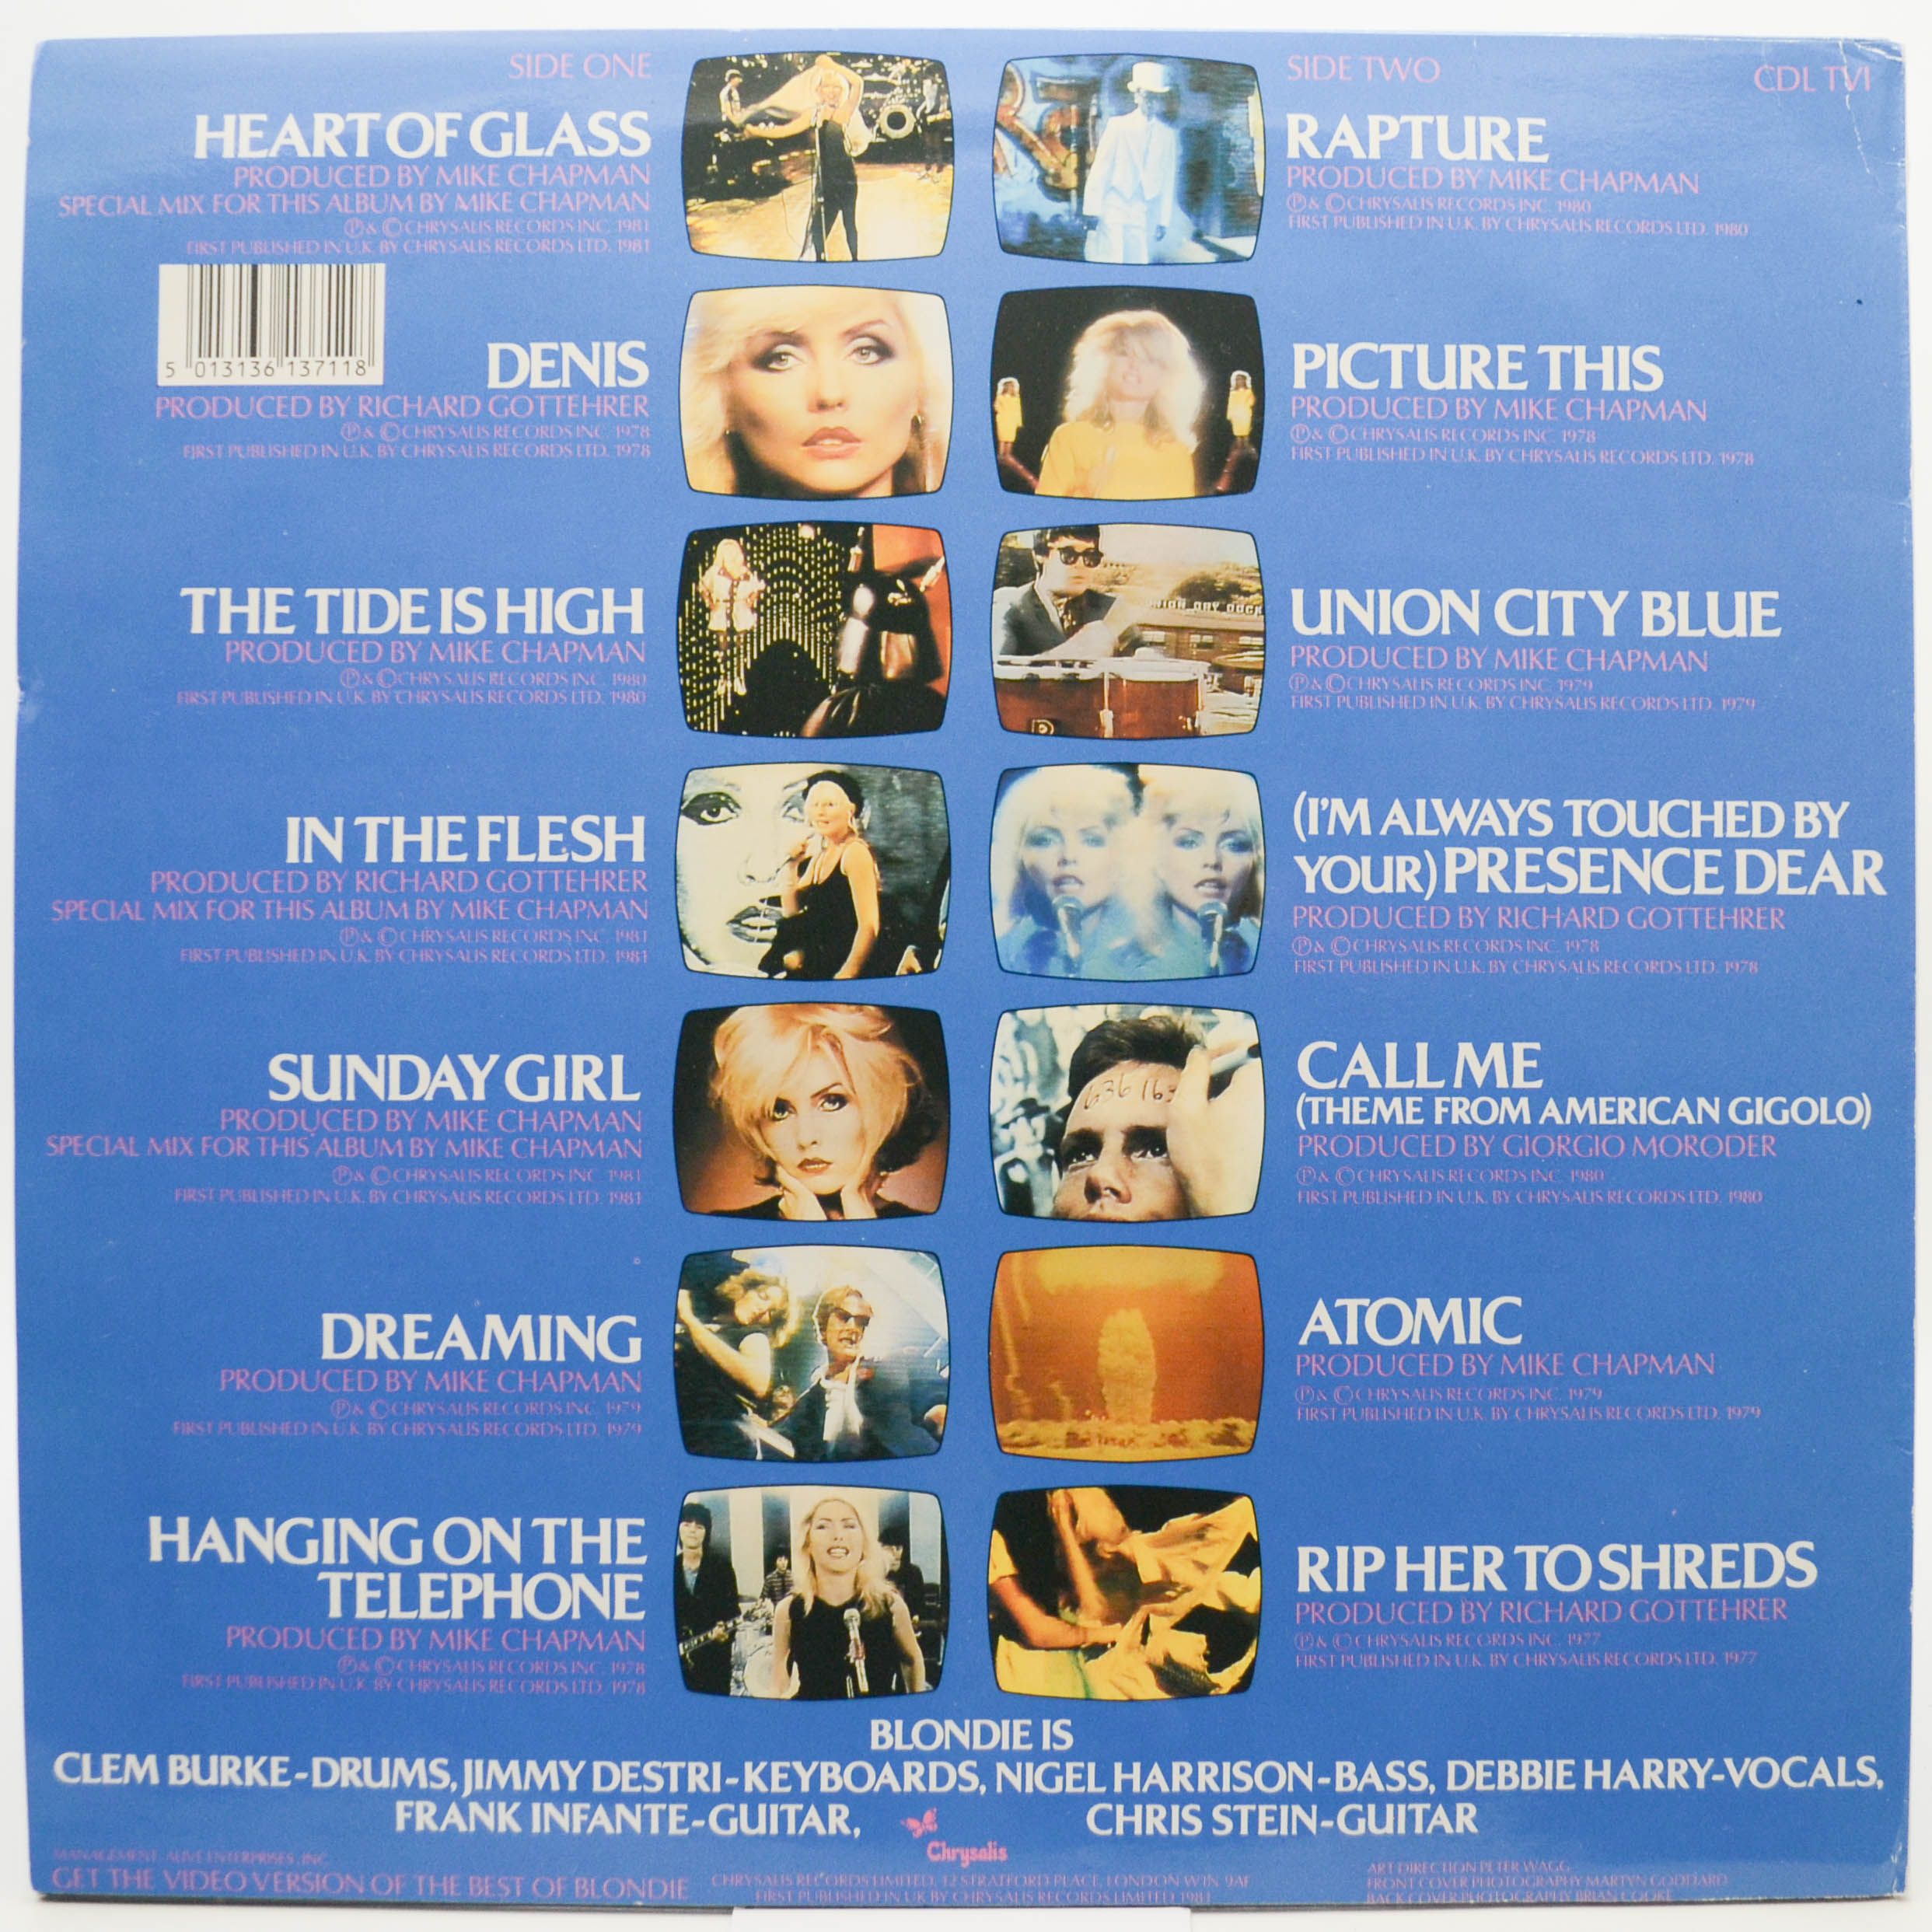 Blondie — The Best Of Blondie (UK), 1981